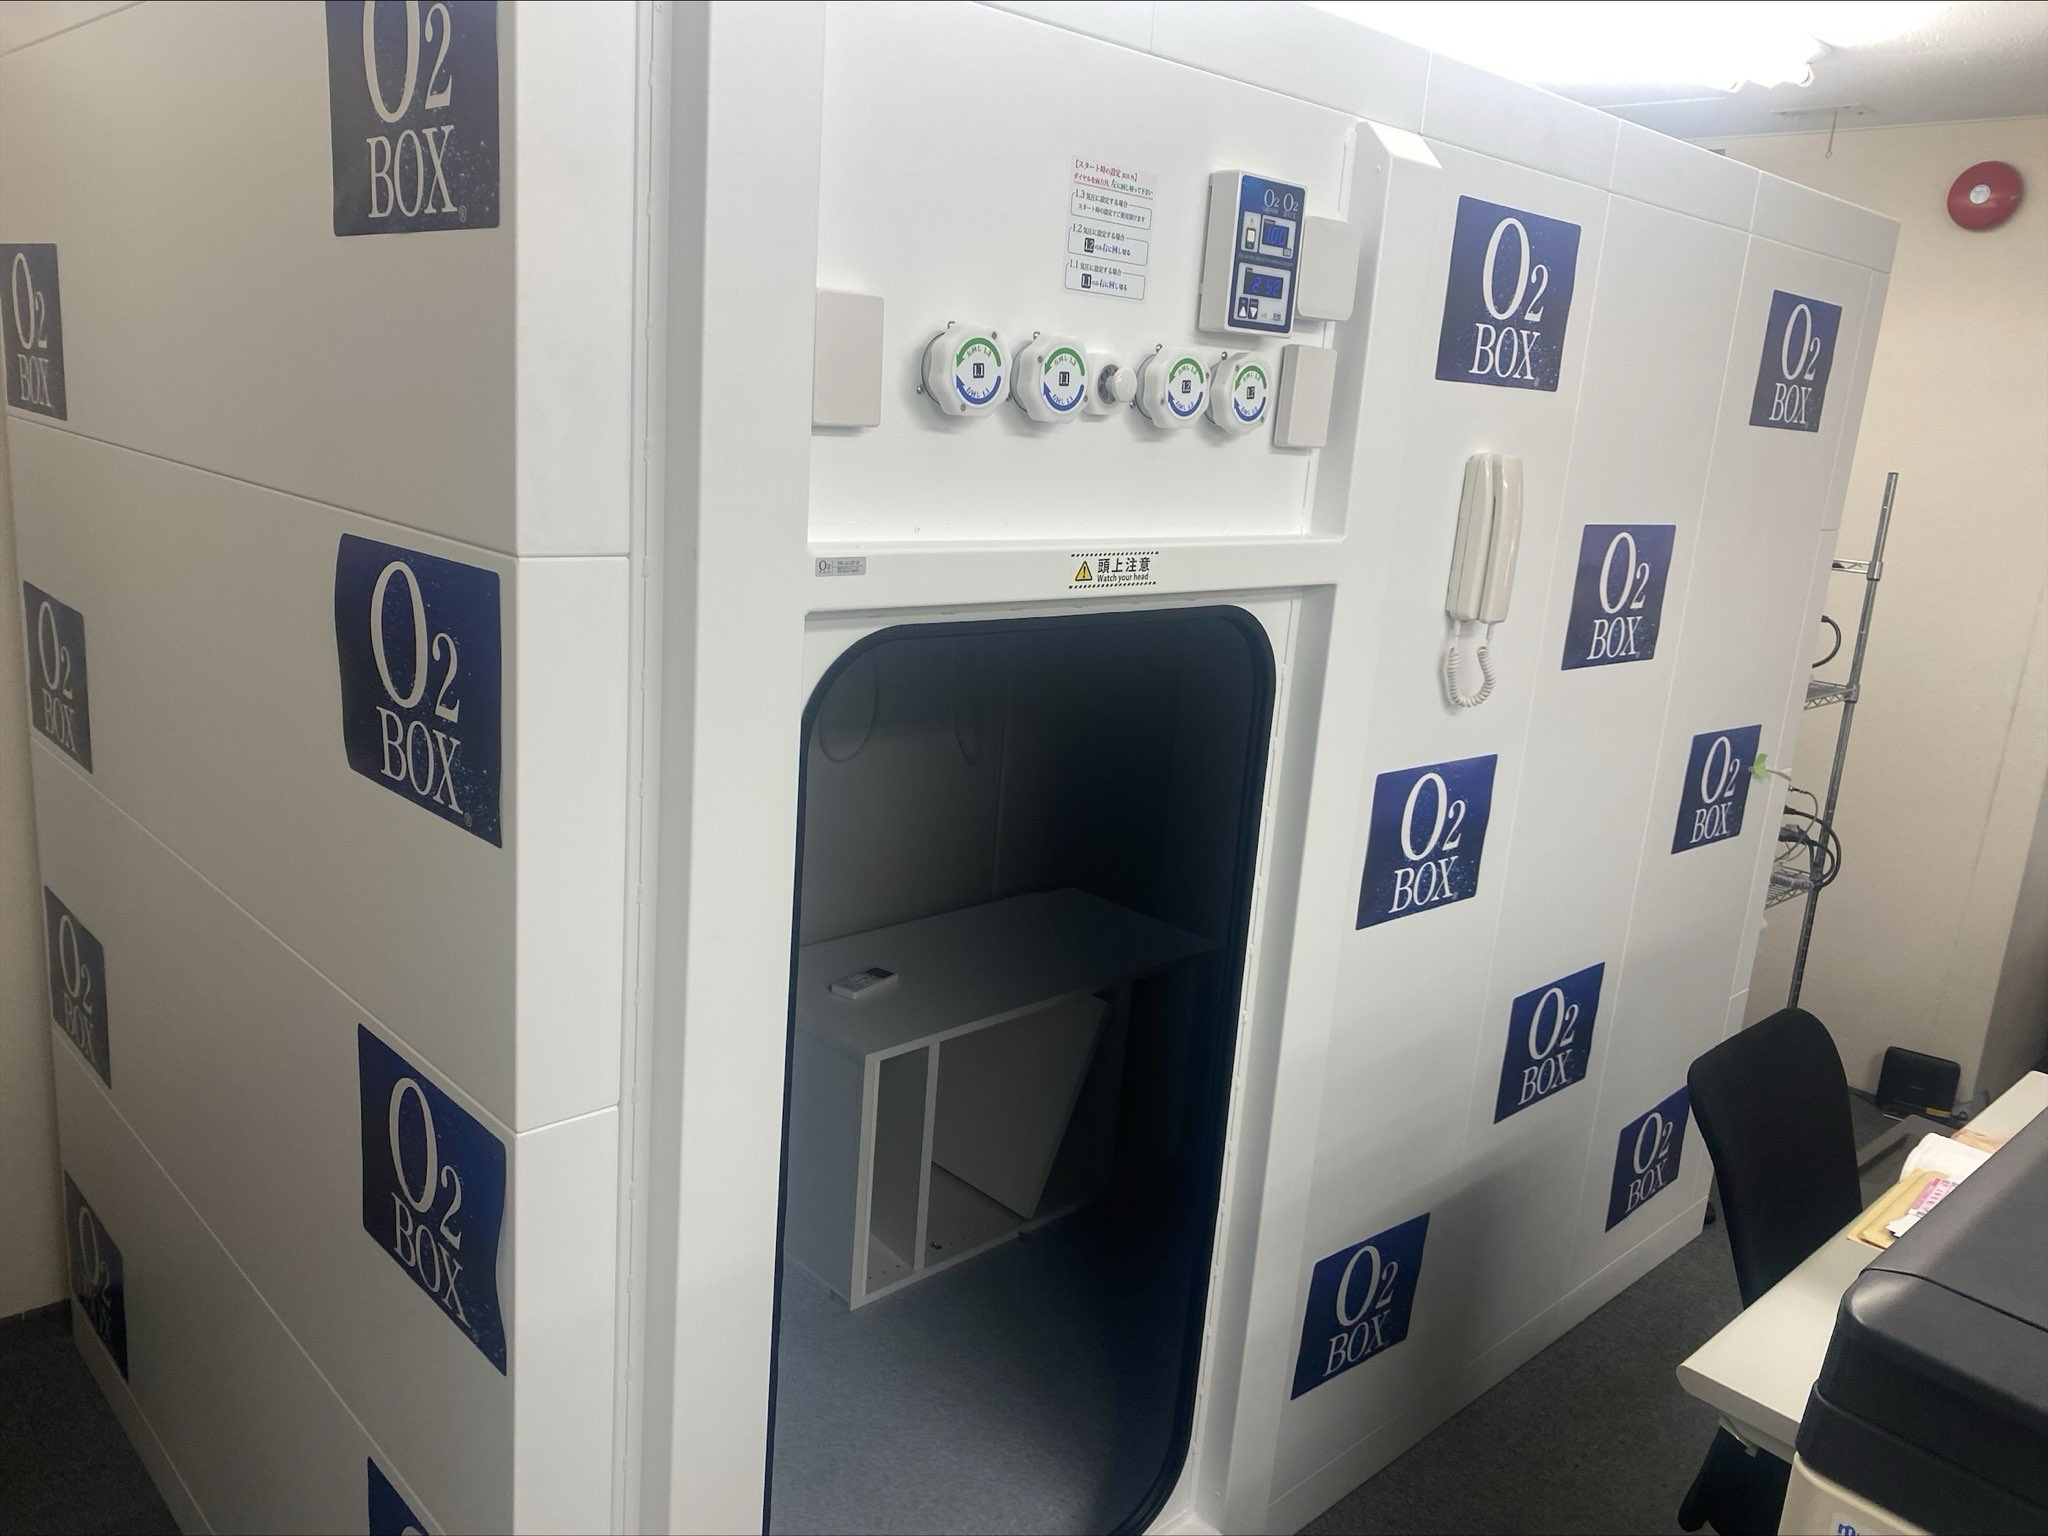 従業員と顧客様満足度向上のため
本社オフィスと東京営業所の2ヶ所に酸素カプセルを導入